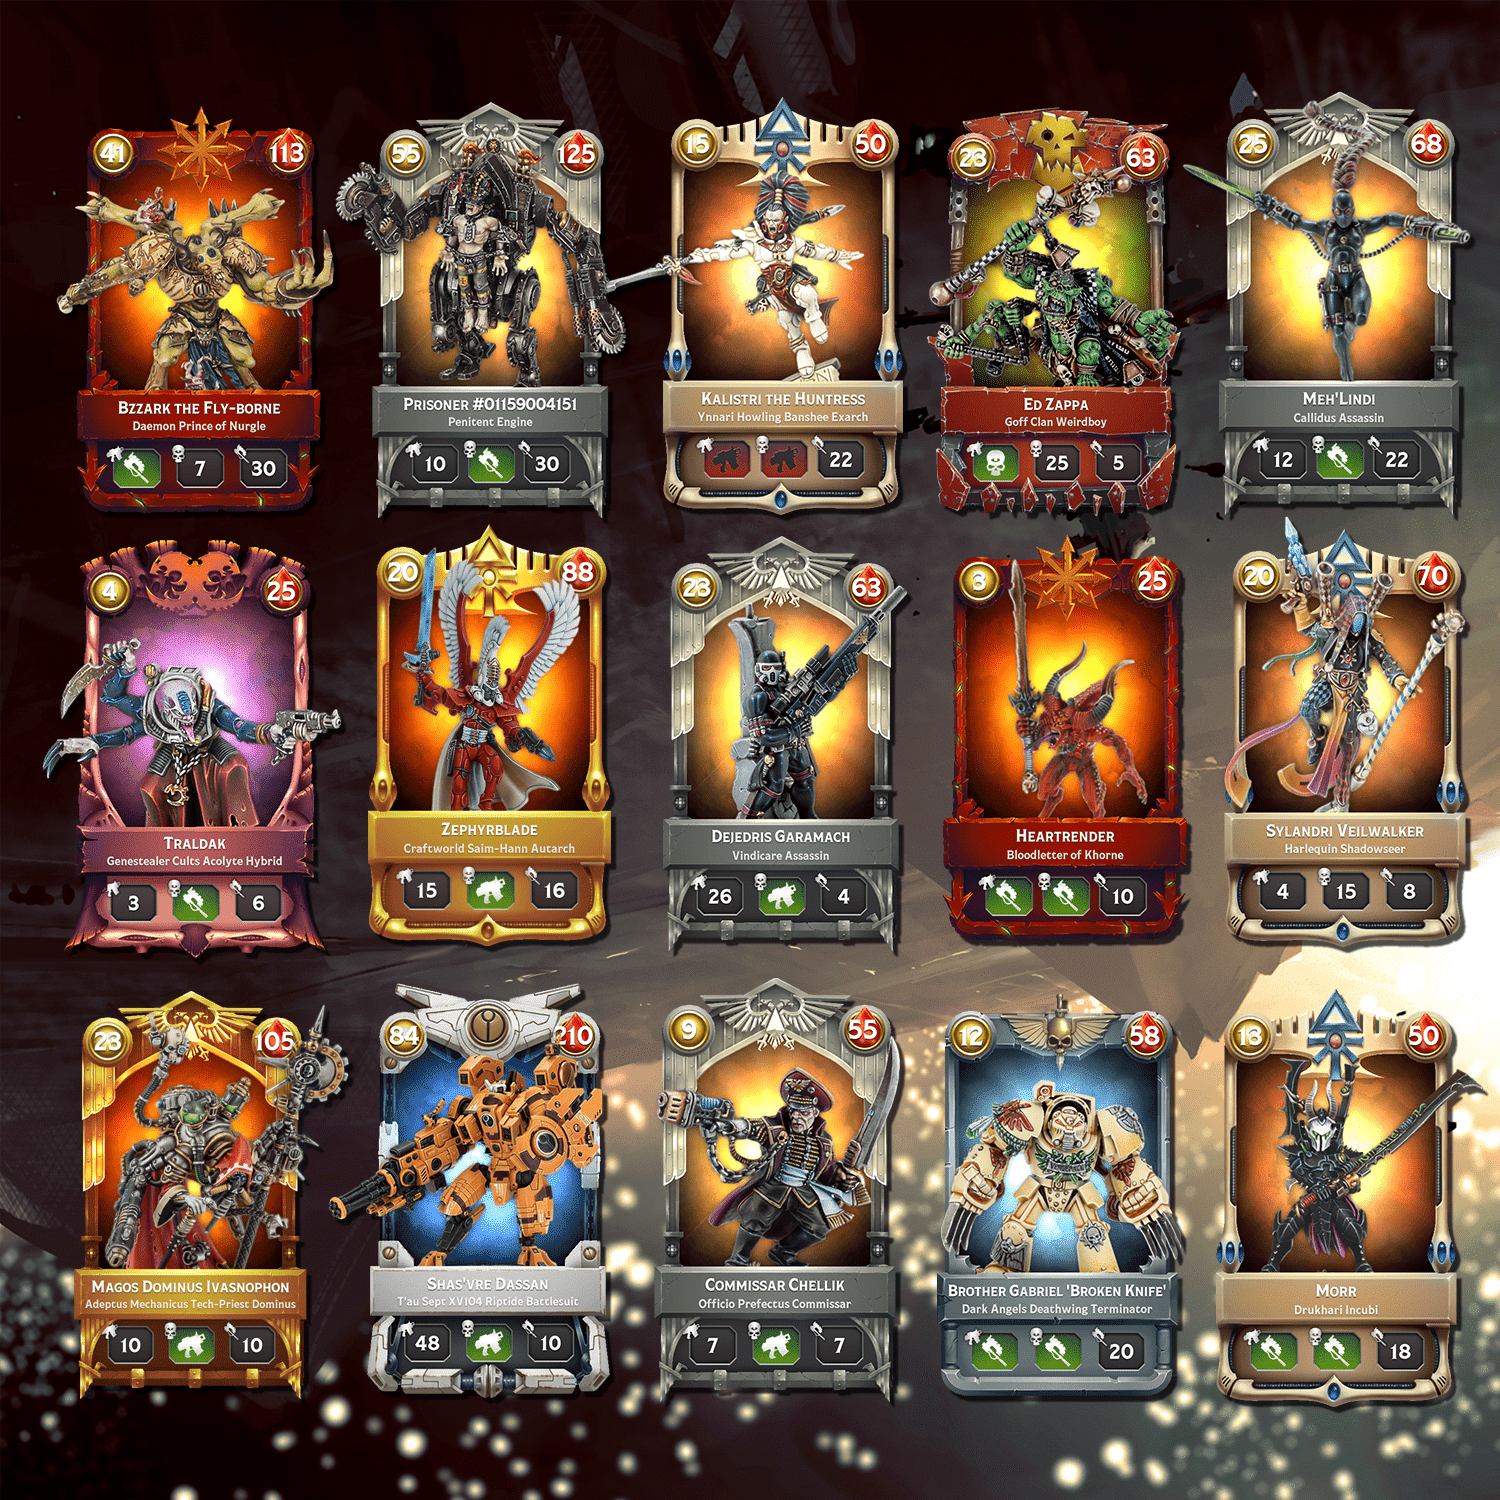 Warhammer cards